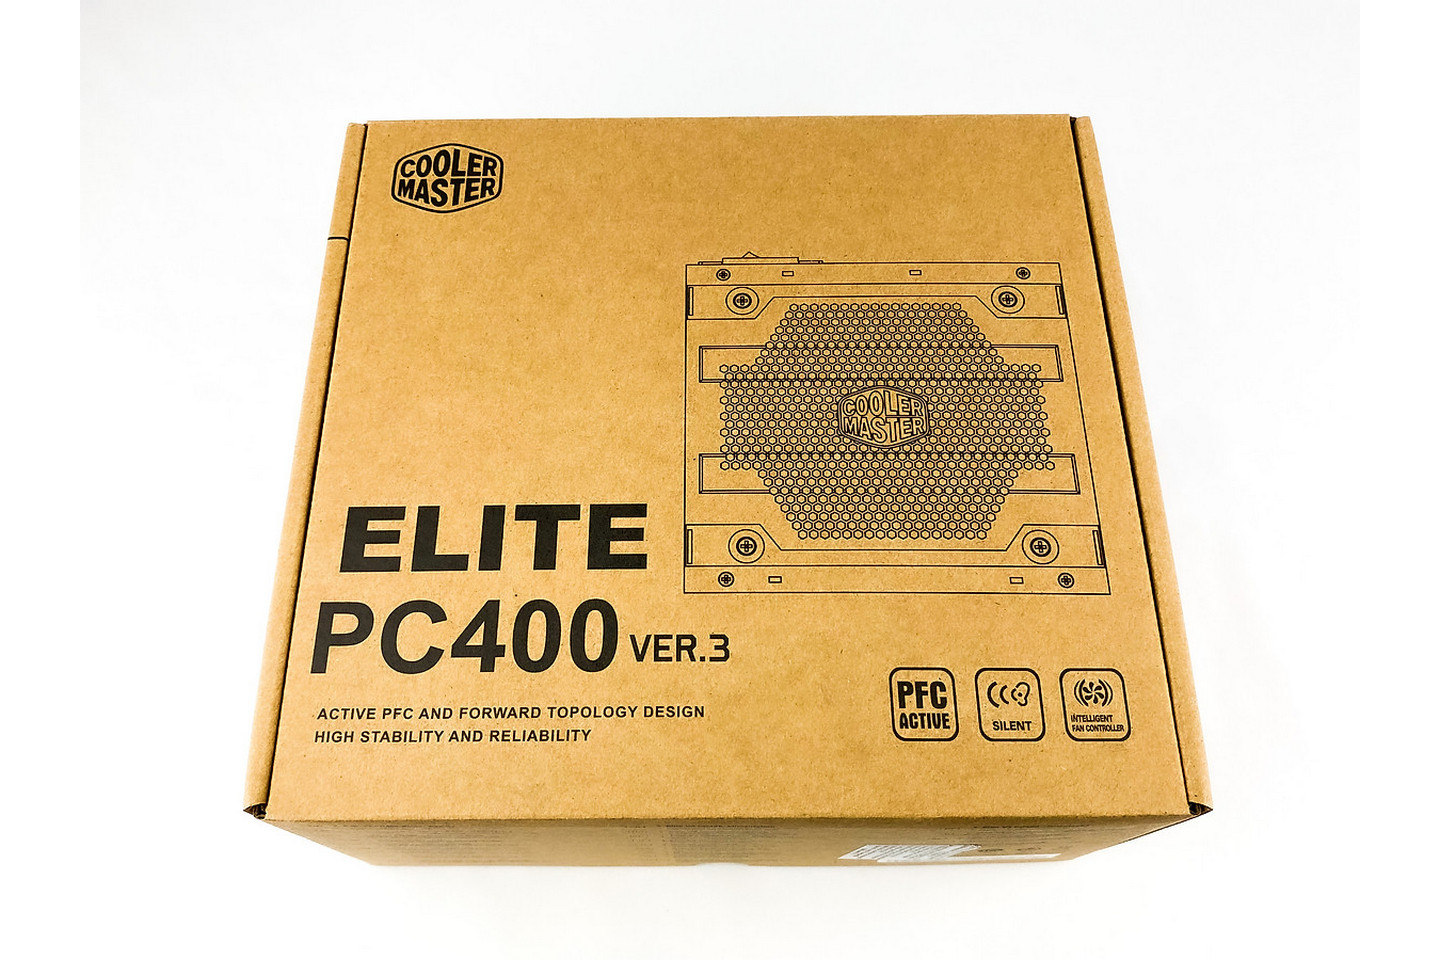 Cooler Master Elite PC400 Ver.3